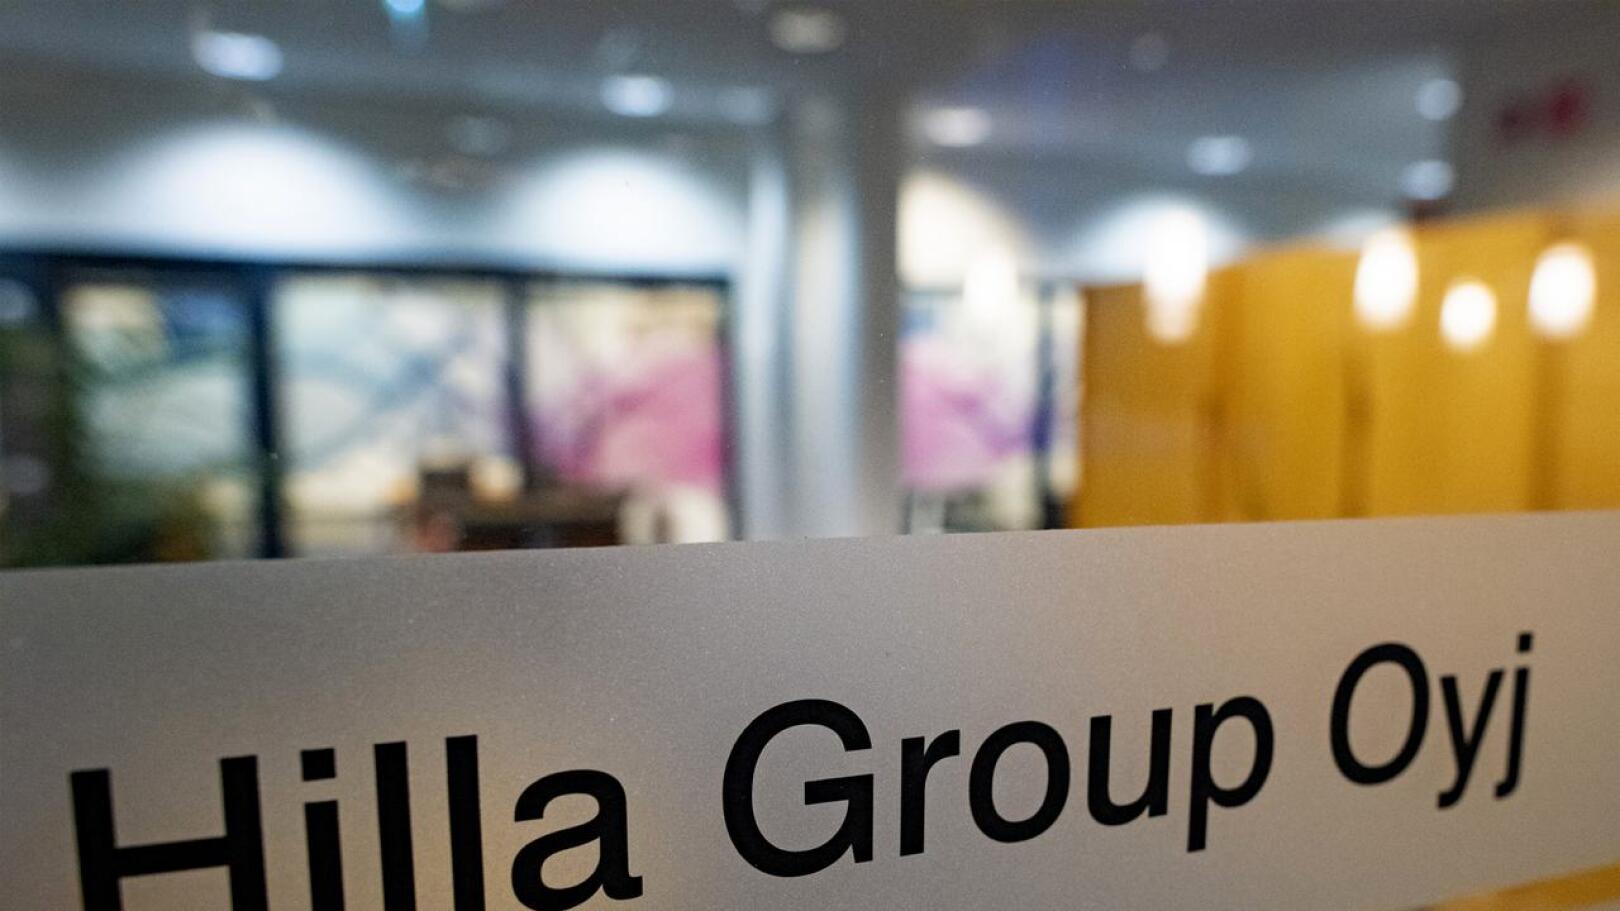 Hilla Group Oyj:n käynnistämien muutosneuvottelujen tavoitteena on vähintään 1 miljoonan euron vuotuinen pysyvä kustannussäästö.